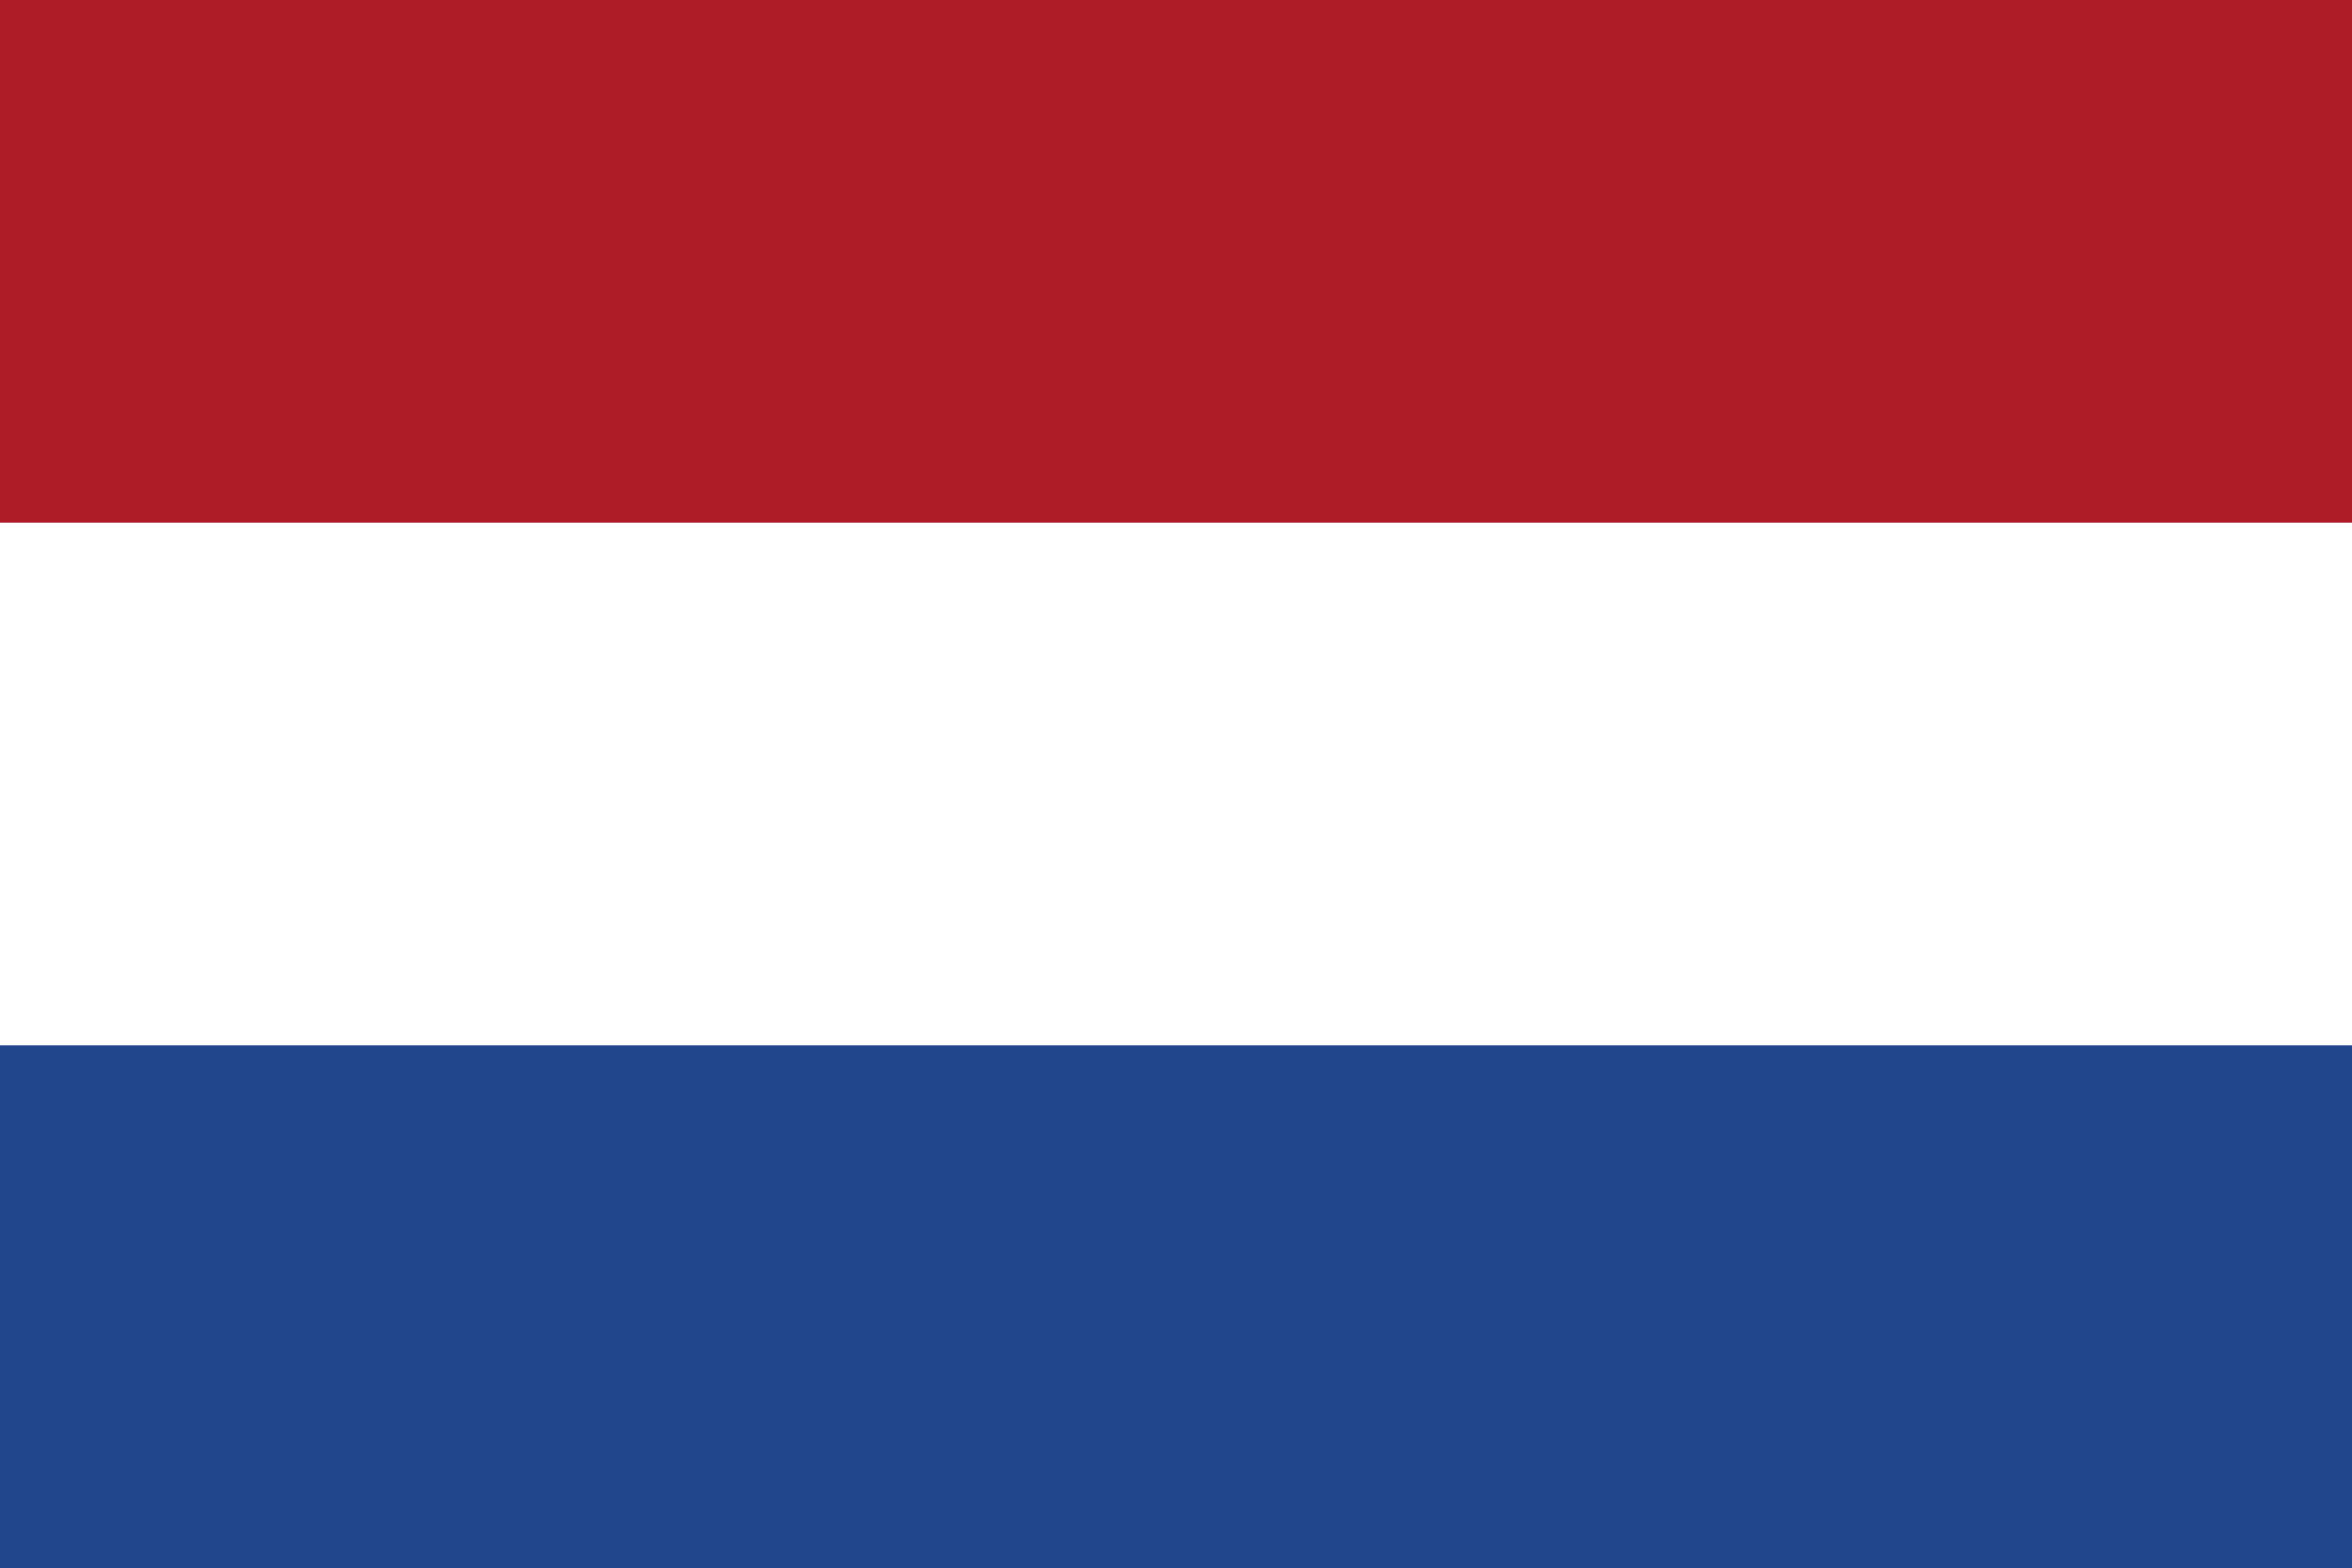 Aula Netherlands